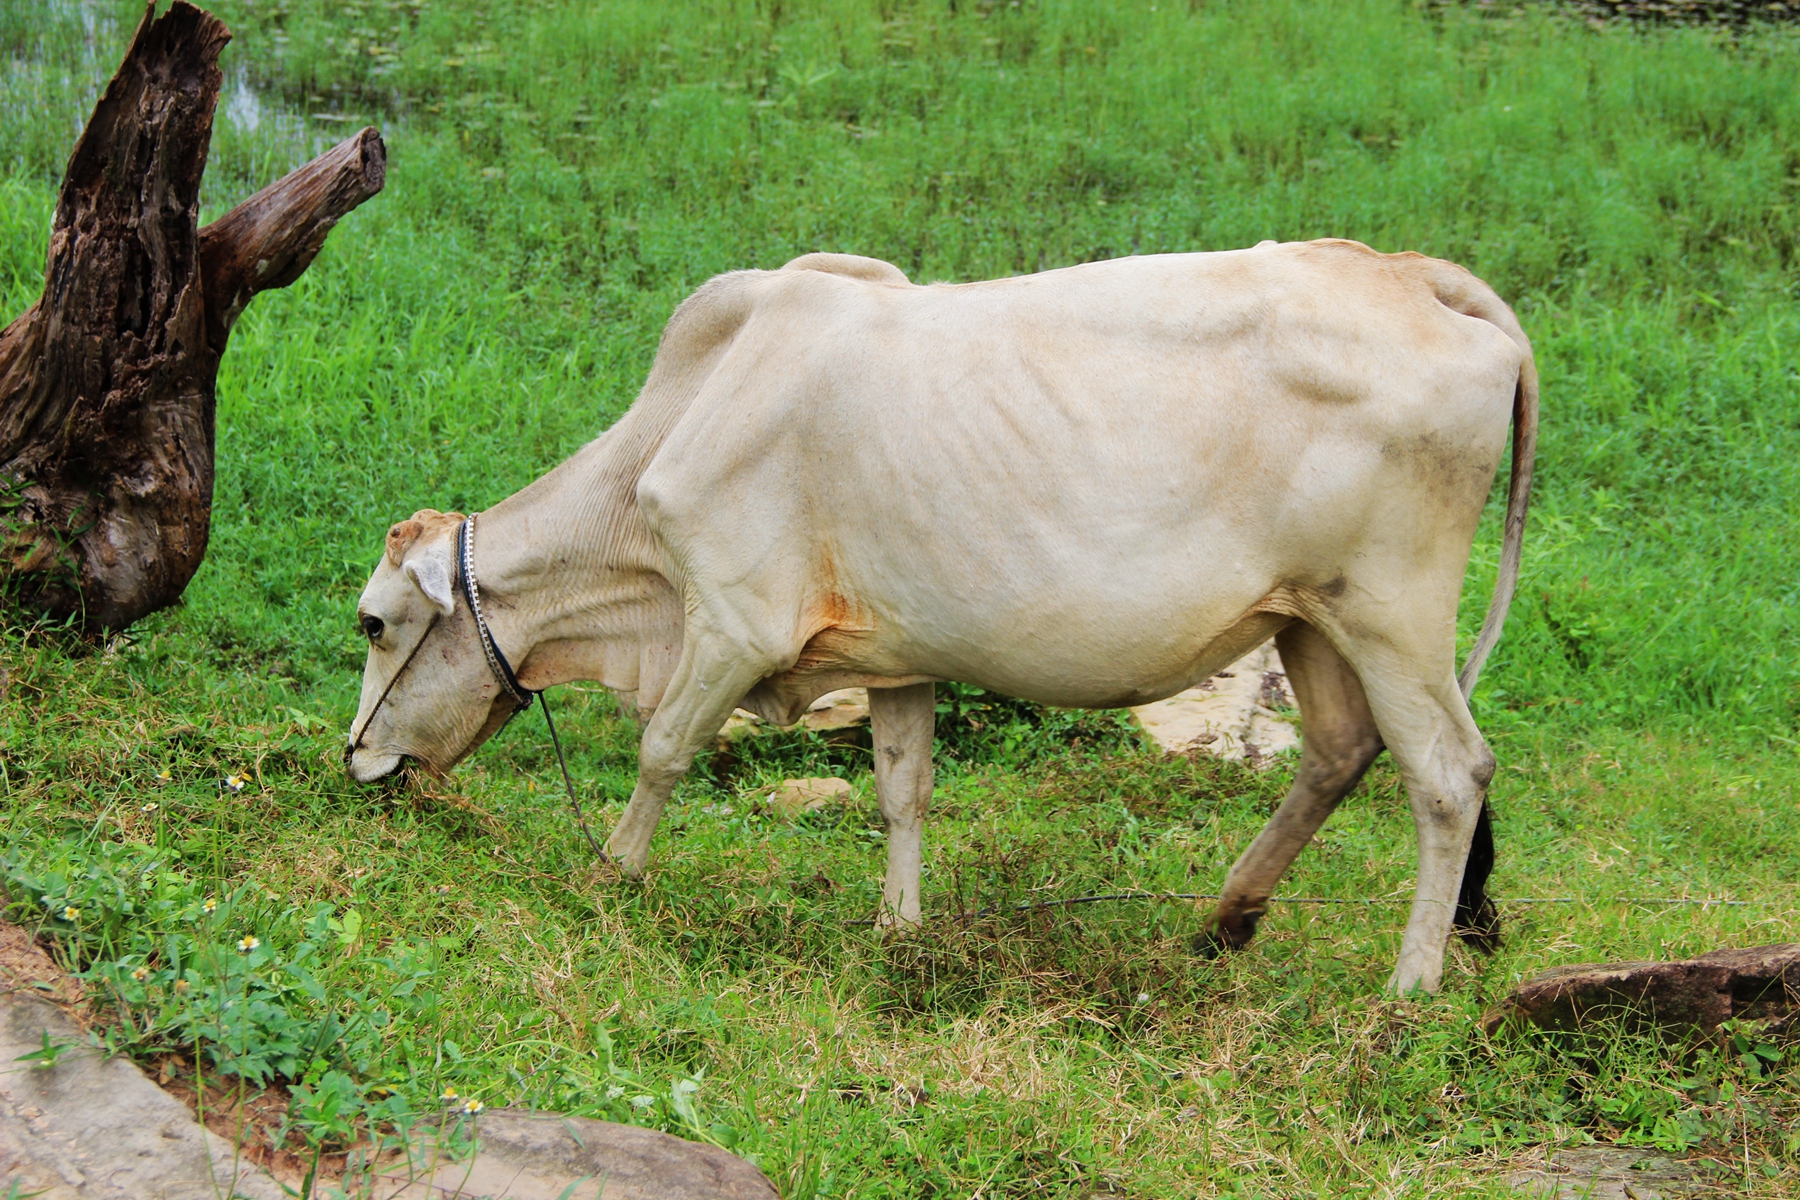 以及柬埔寨随处可见的白牛,都是那么的令人流连忘返,守望凝神